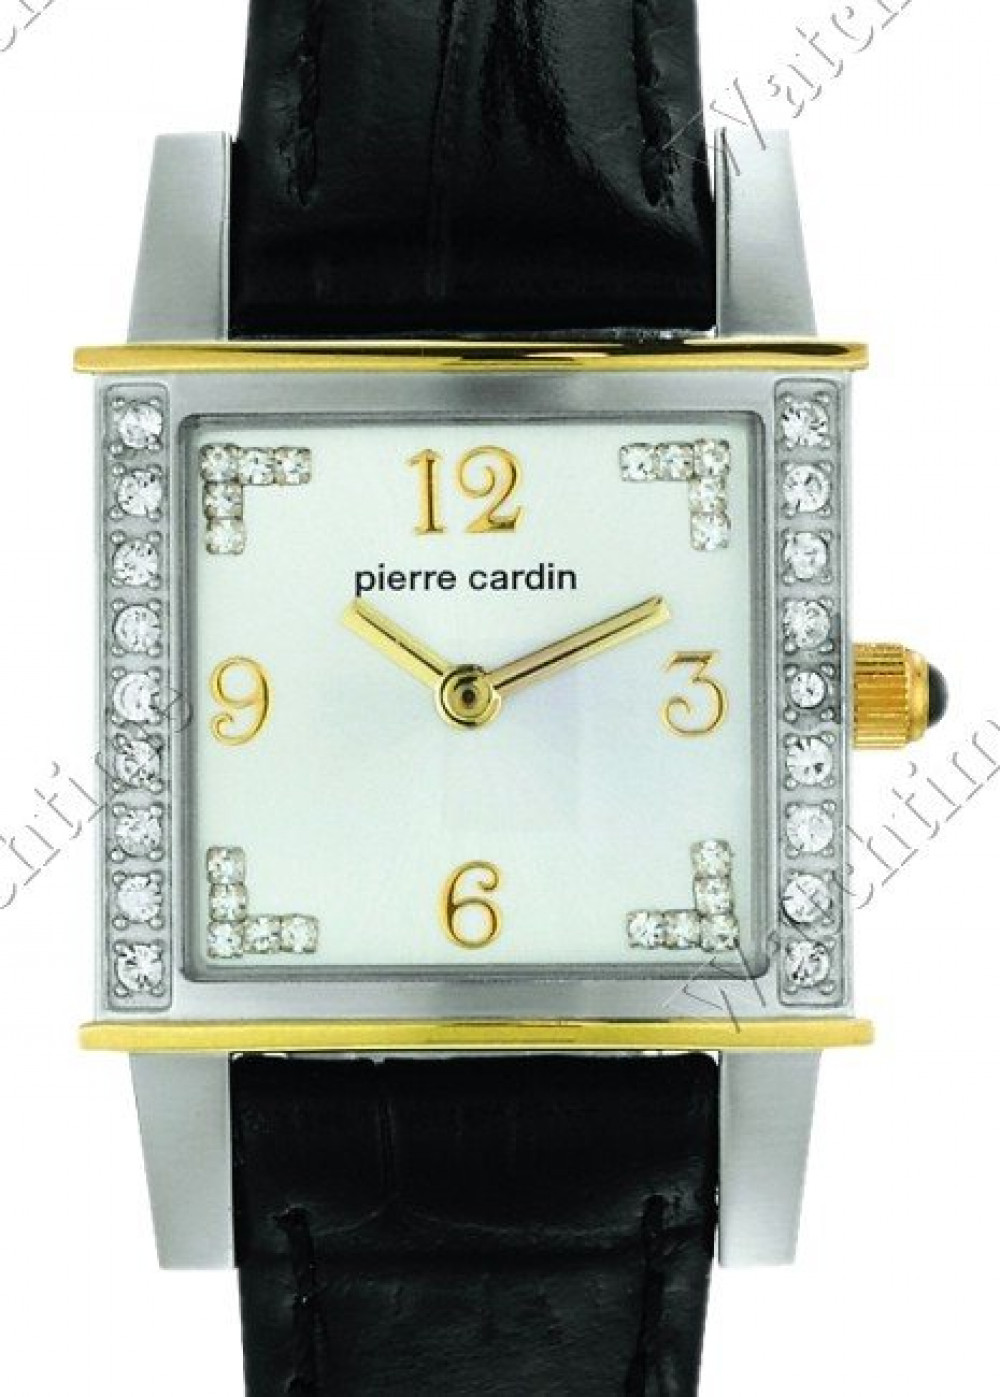 Zegarek firmy Pierre Cardin, model Comtesse